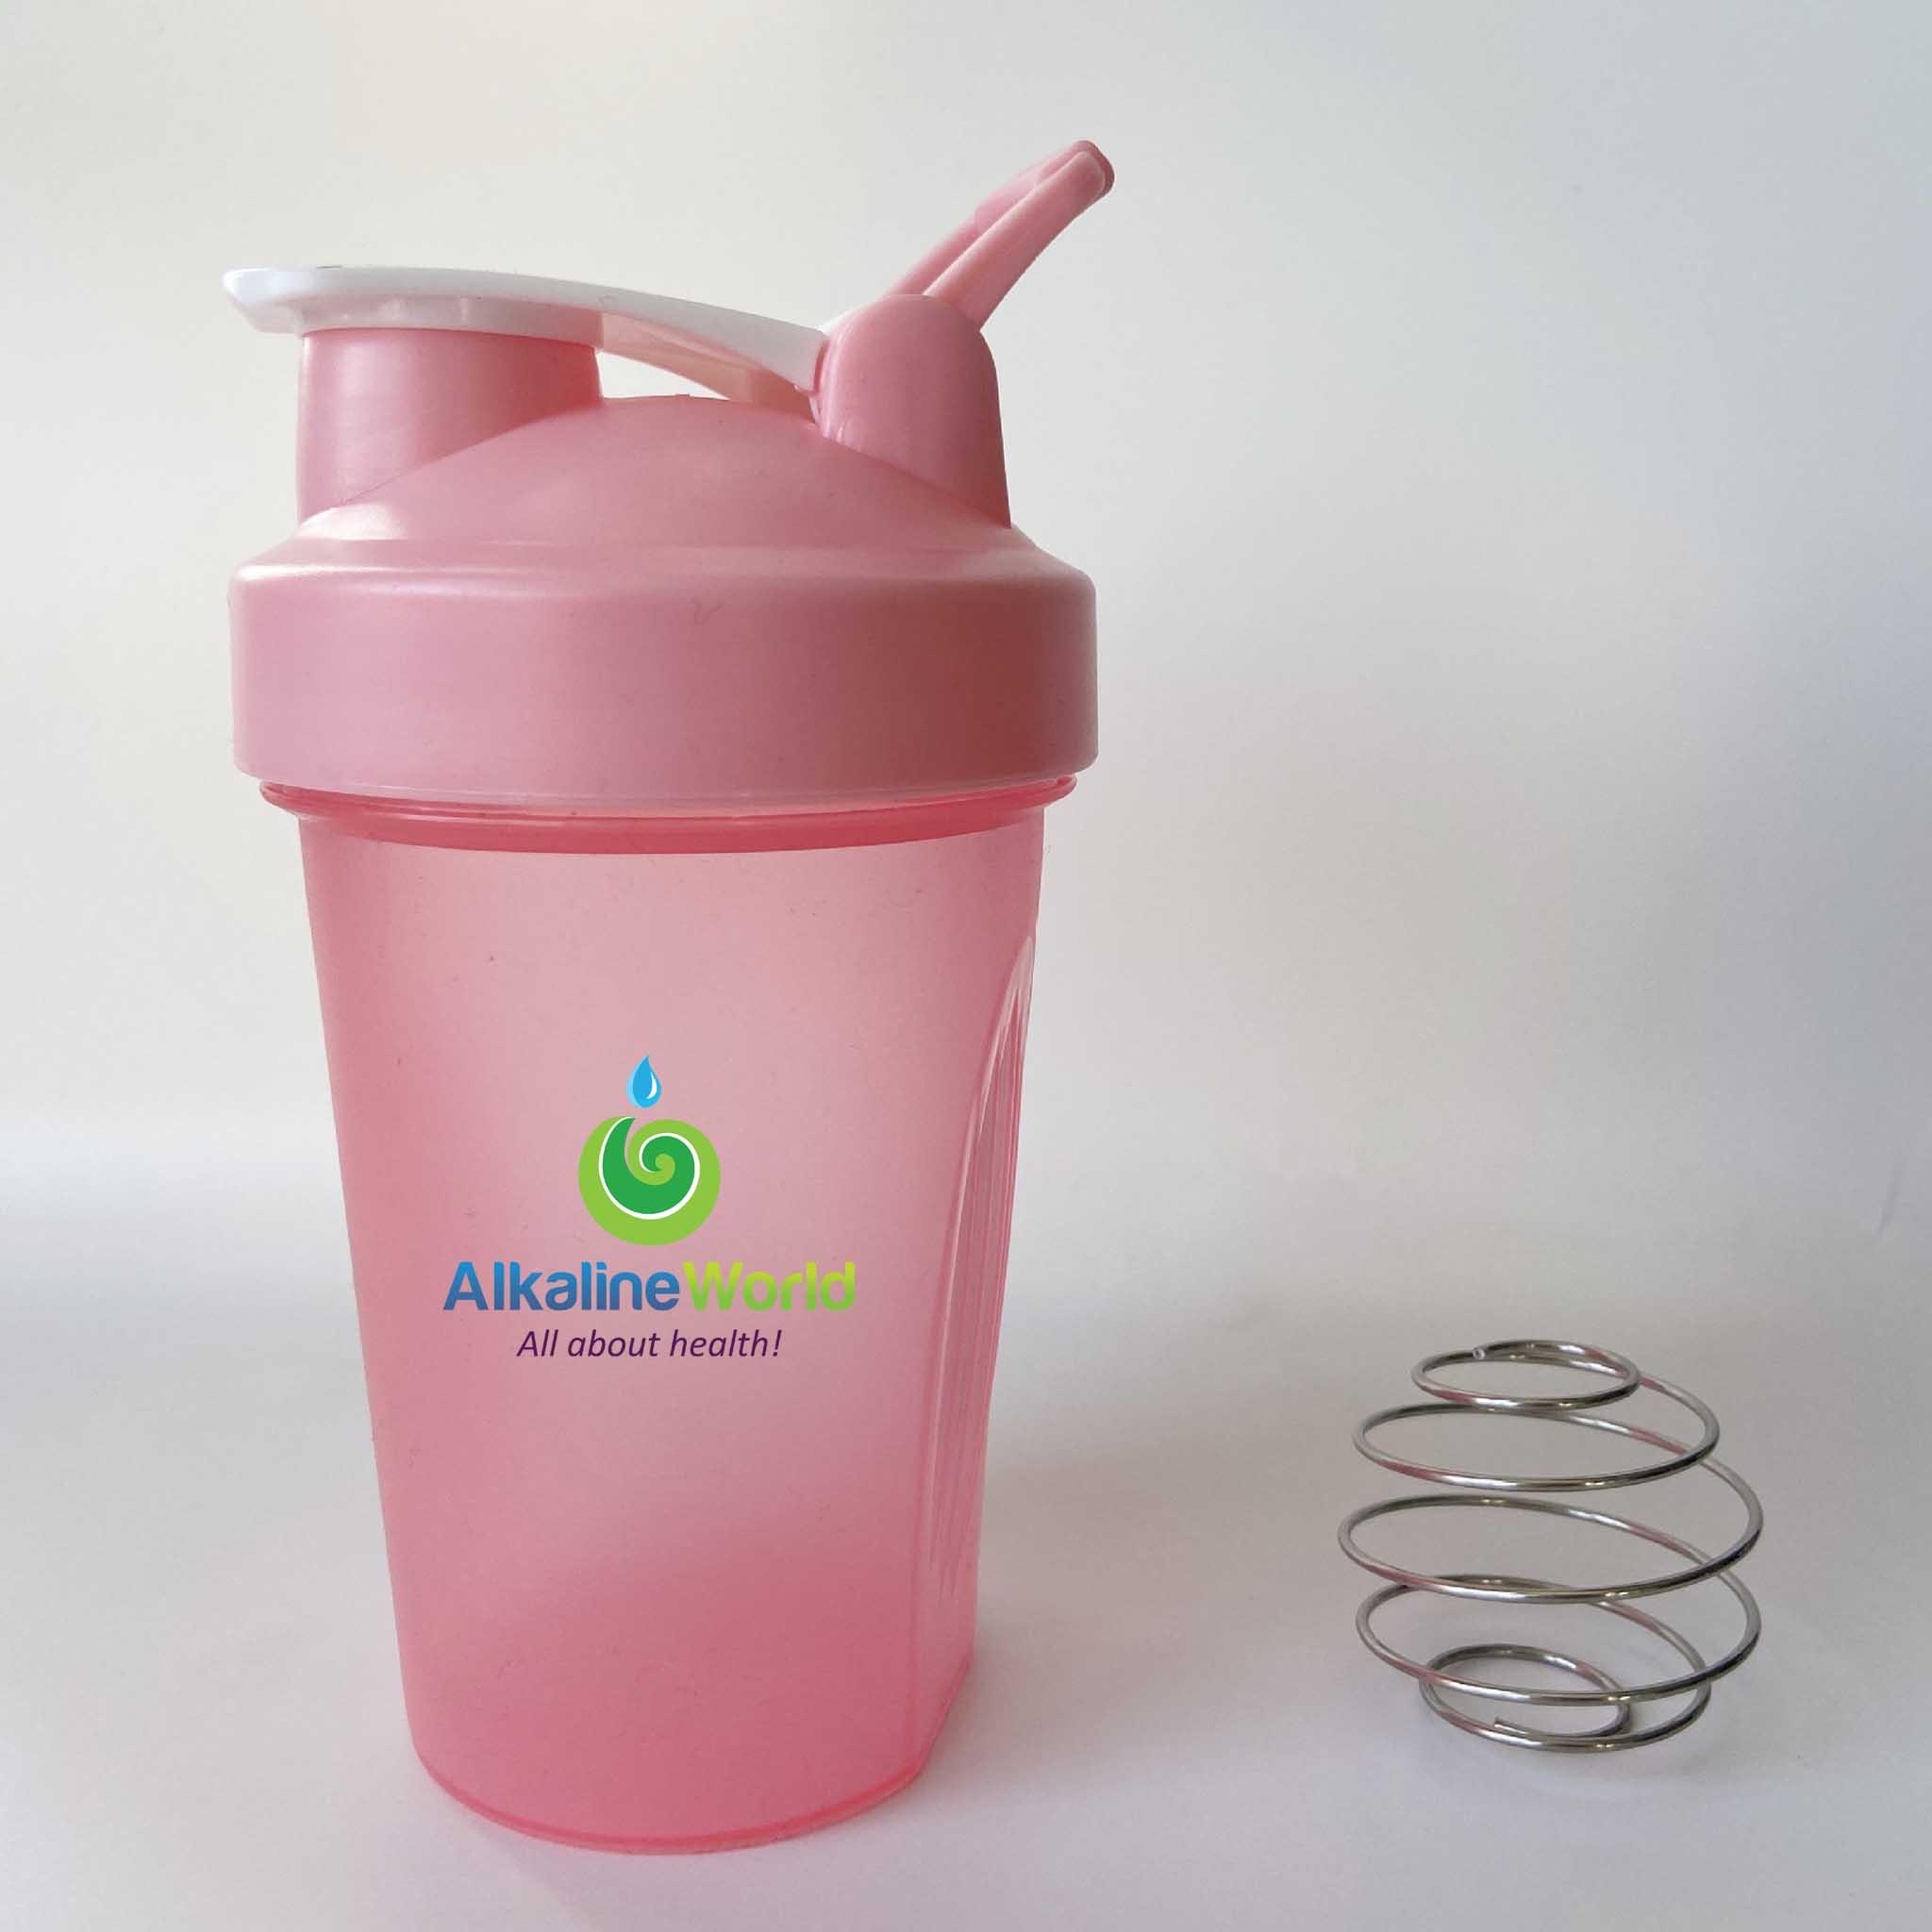 Shaker Bottle 400ml - Alkaline World